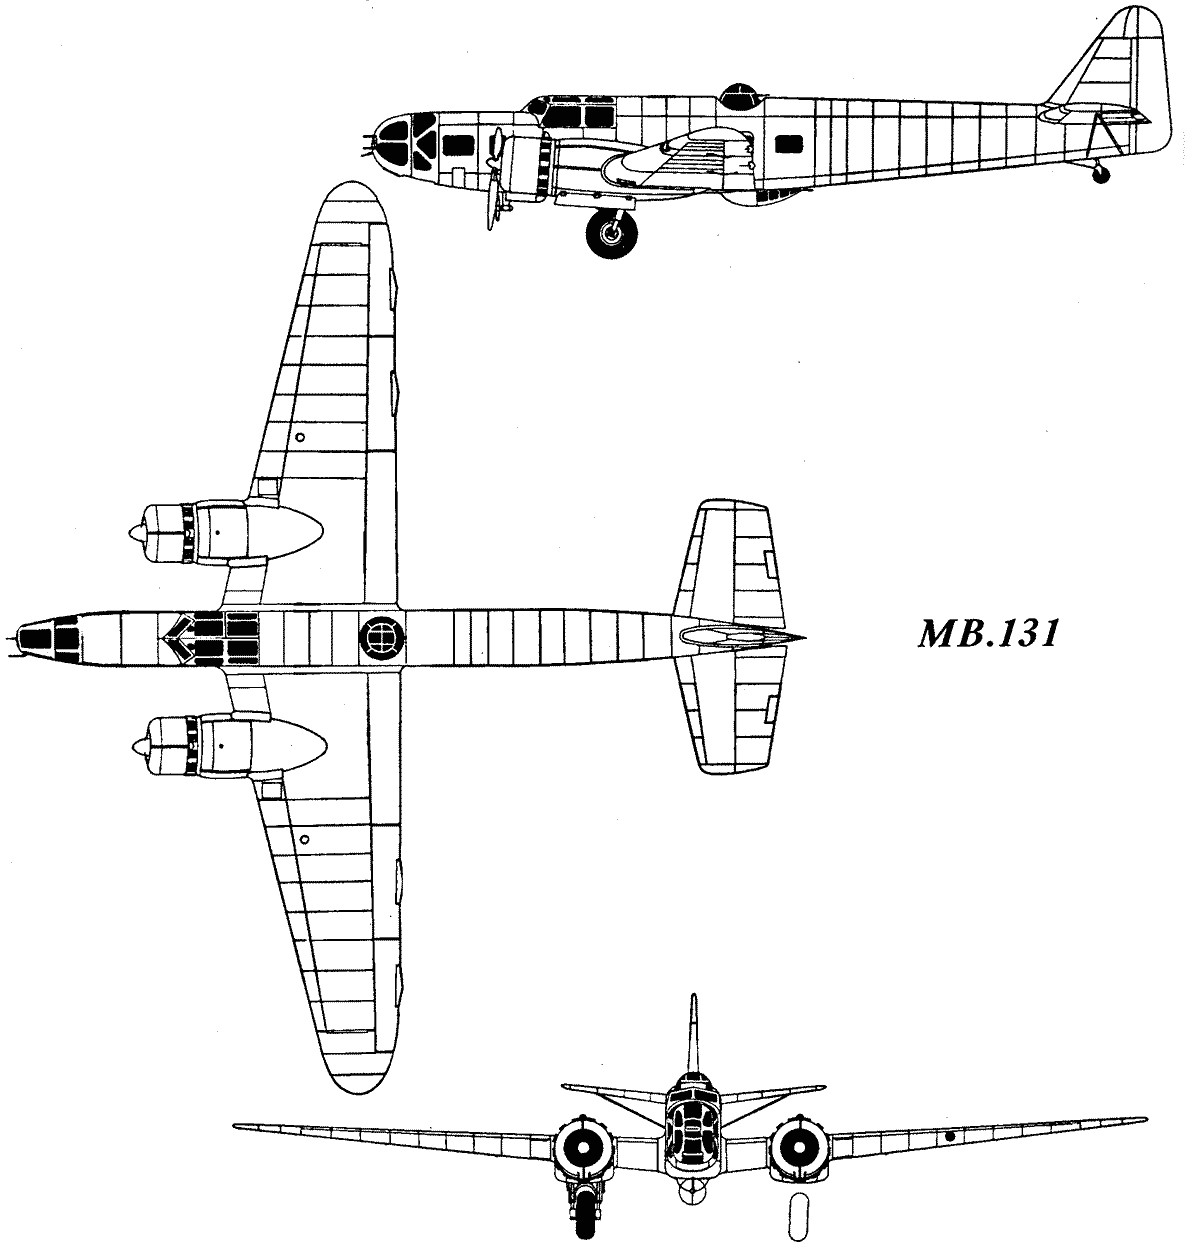 Bloch MB.131 blueprint